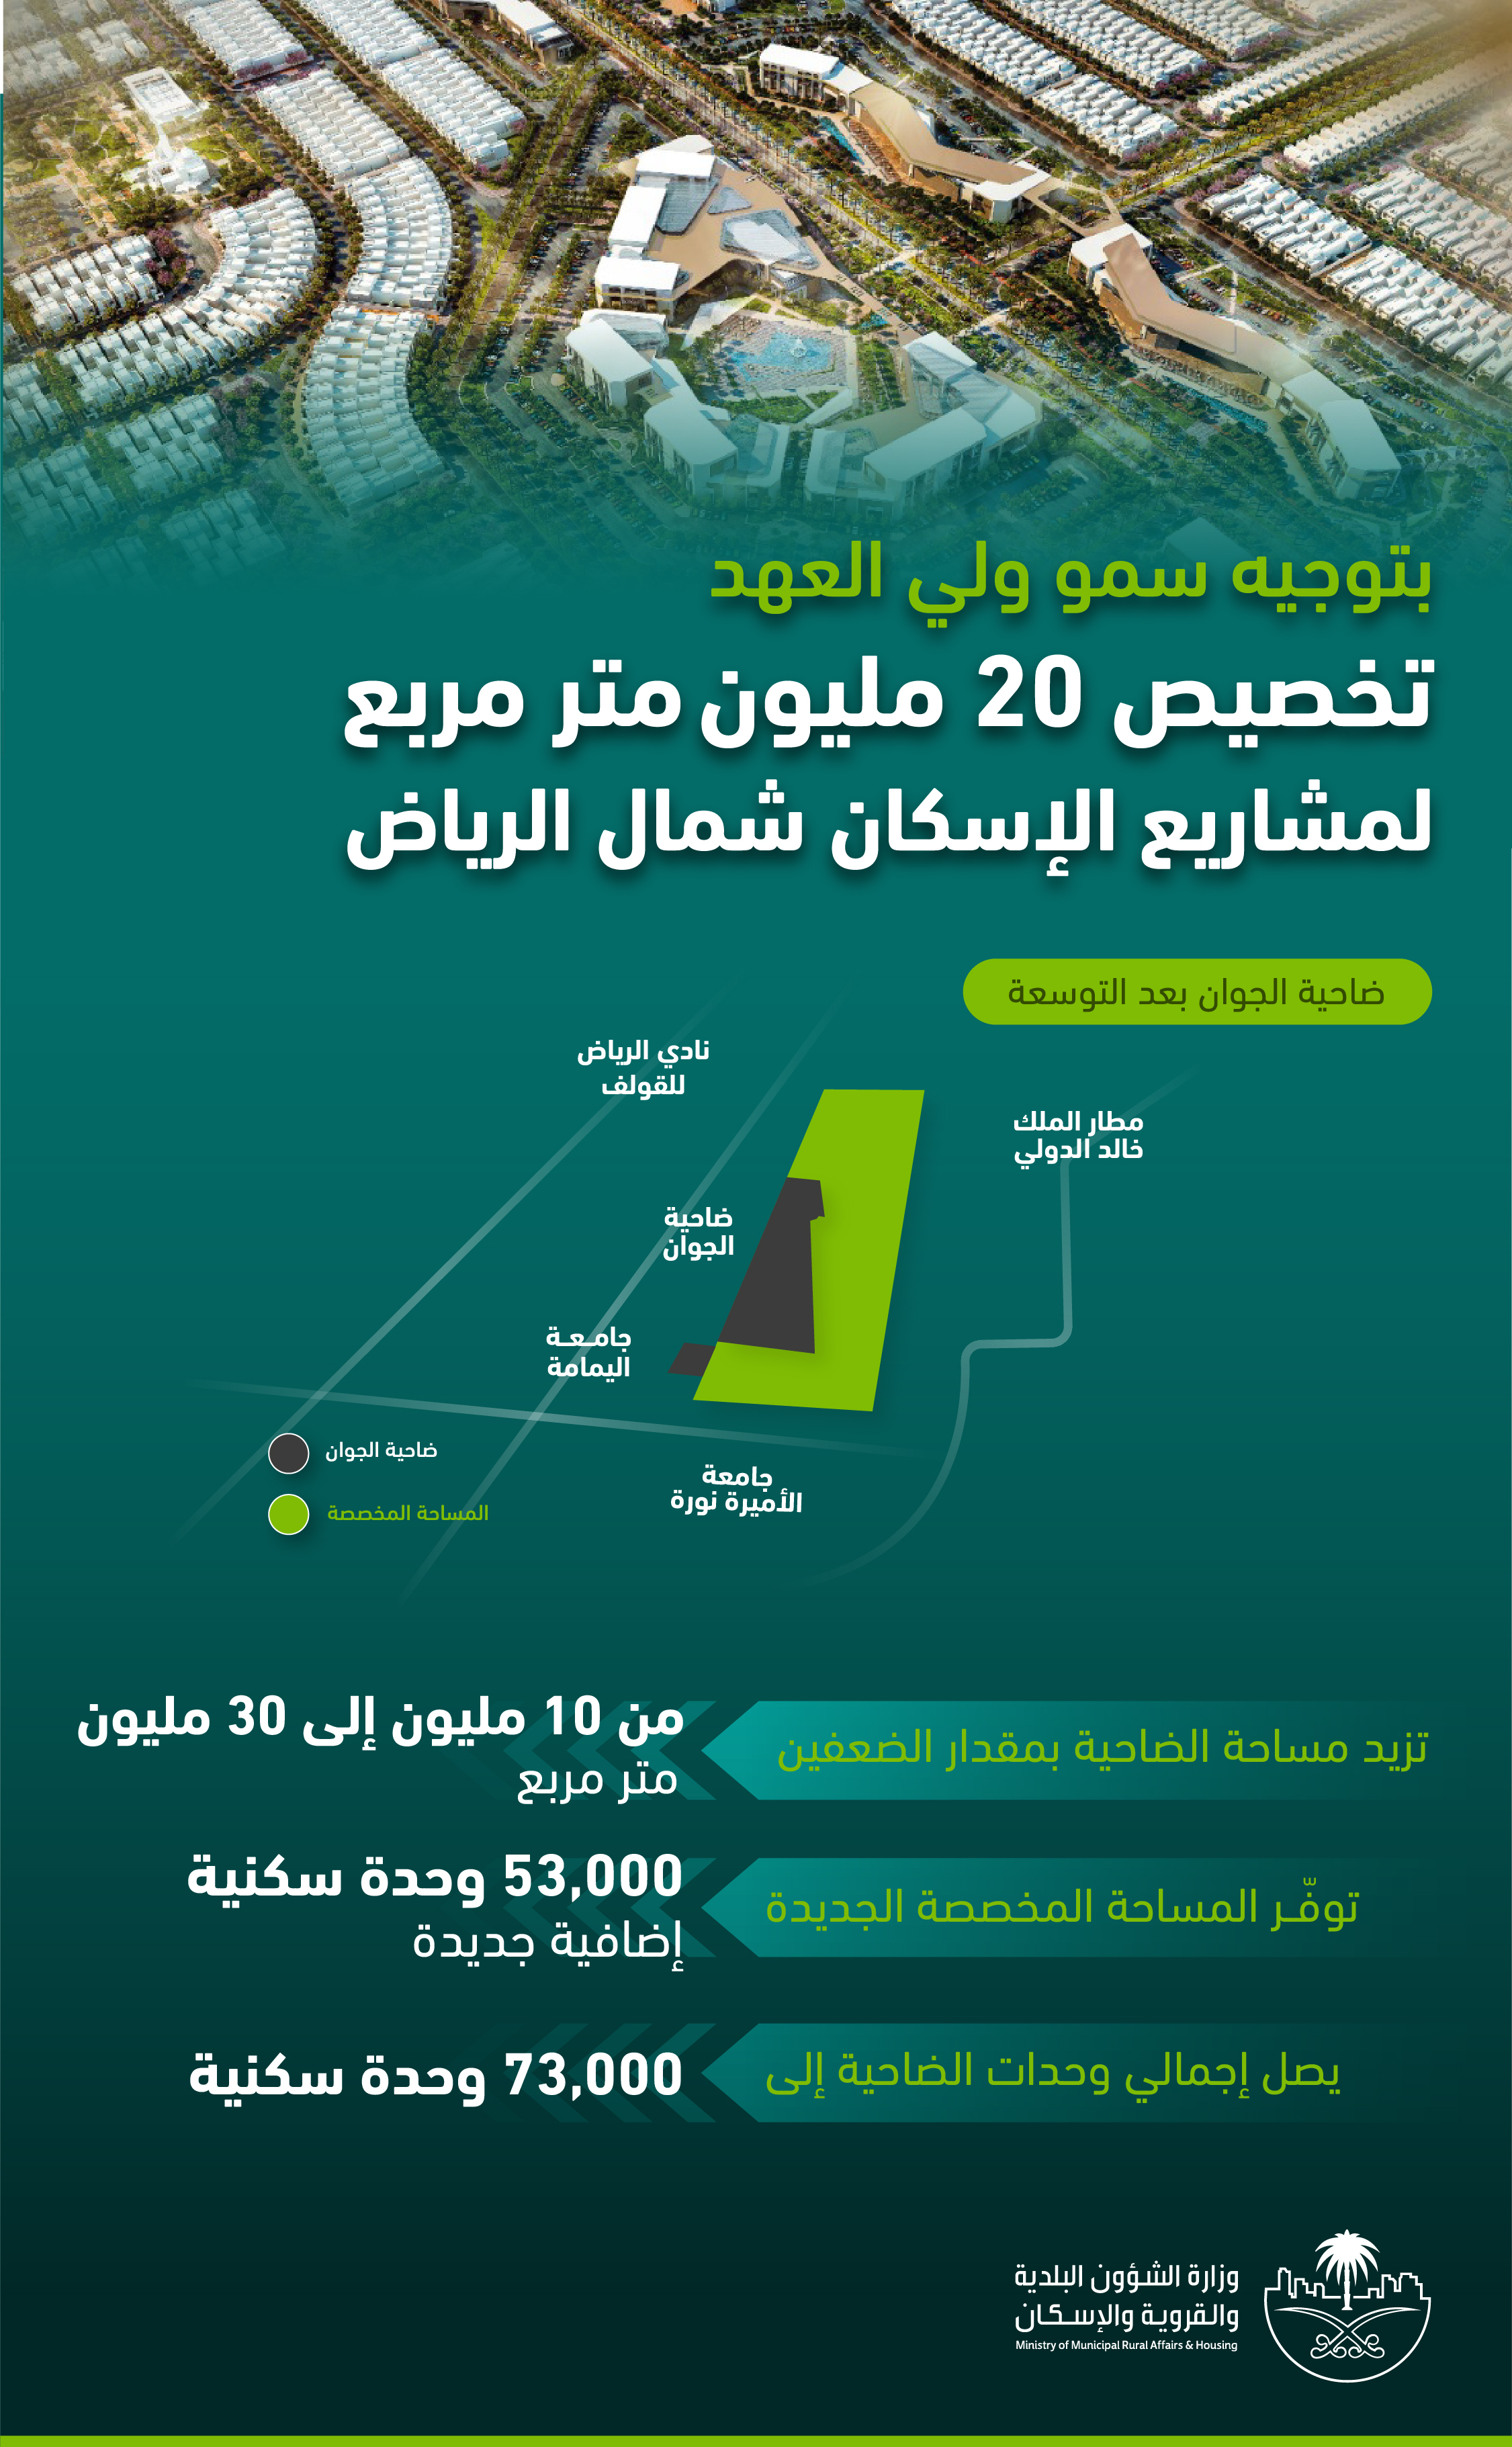 ولي العهد يوجّه بمضاعفة مشروعات الإسكان شمال الرياض للضعفين بتخصيص 20 مليون م2 مربع لبناء 53 ألف وحدة سكنية جديدة